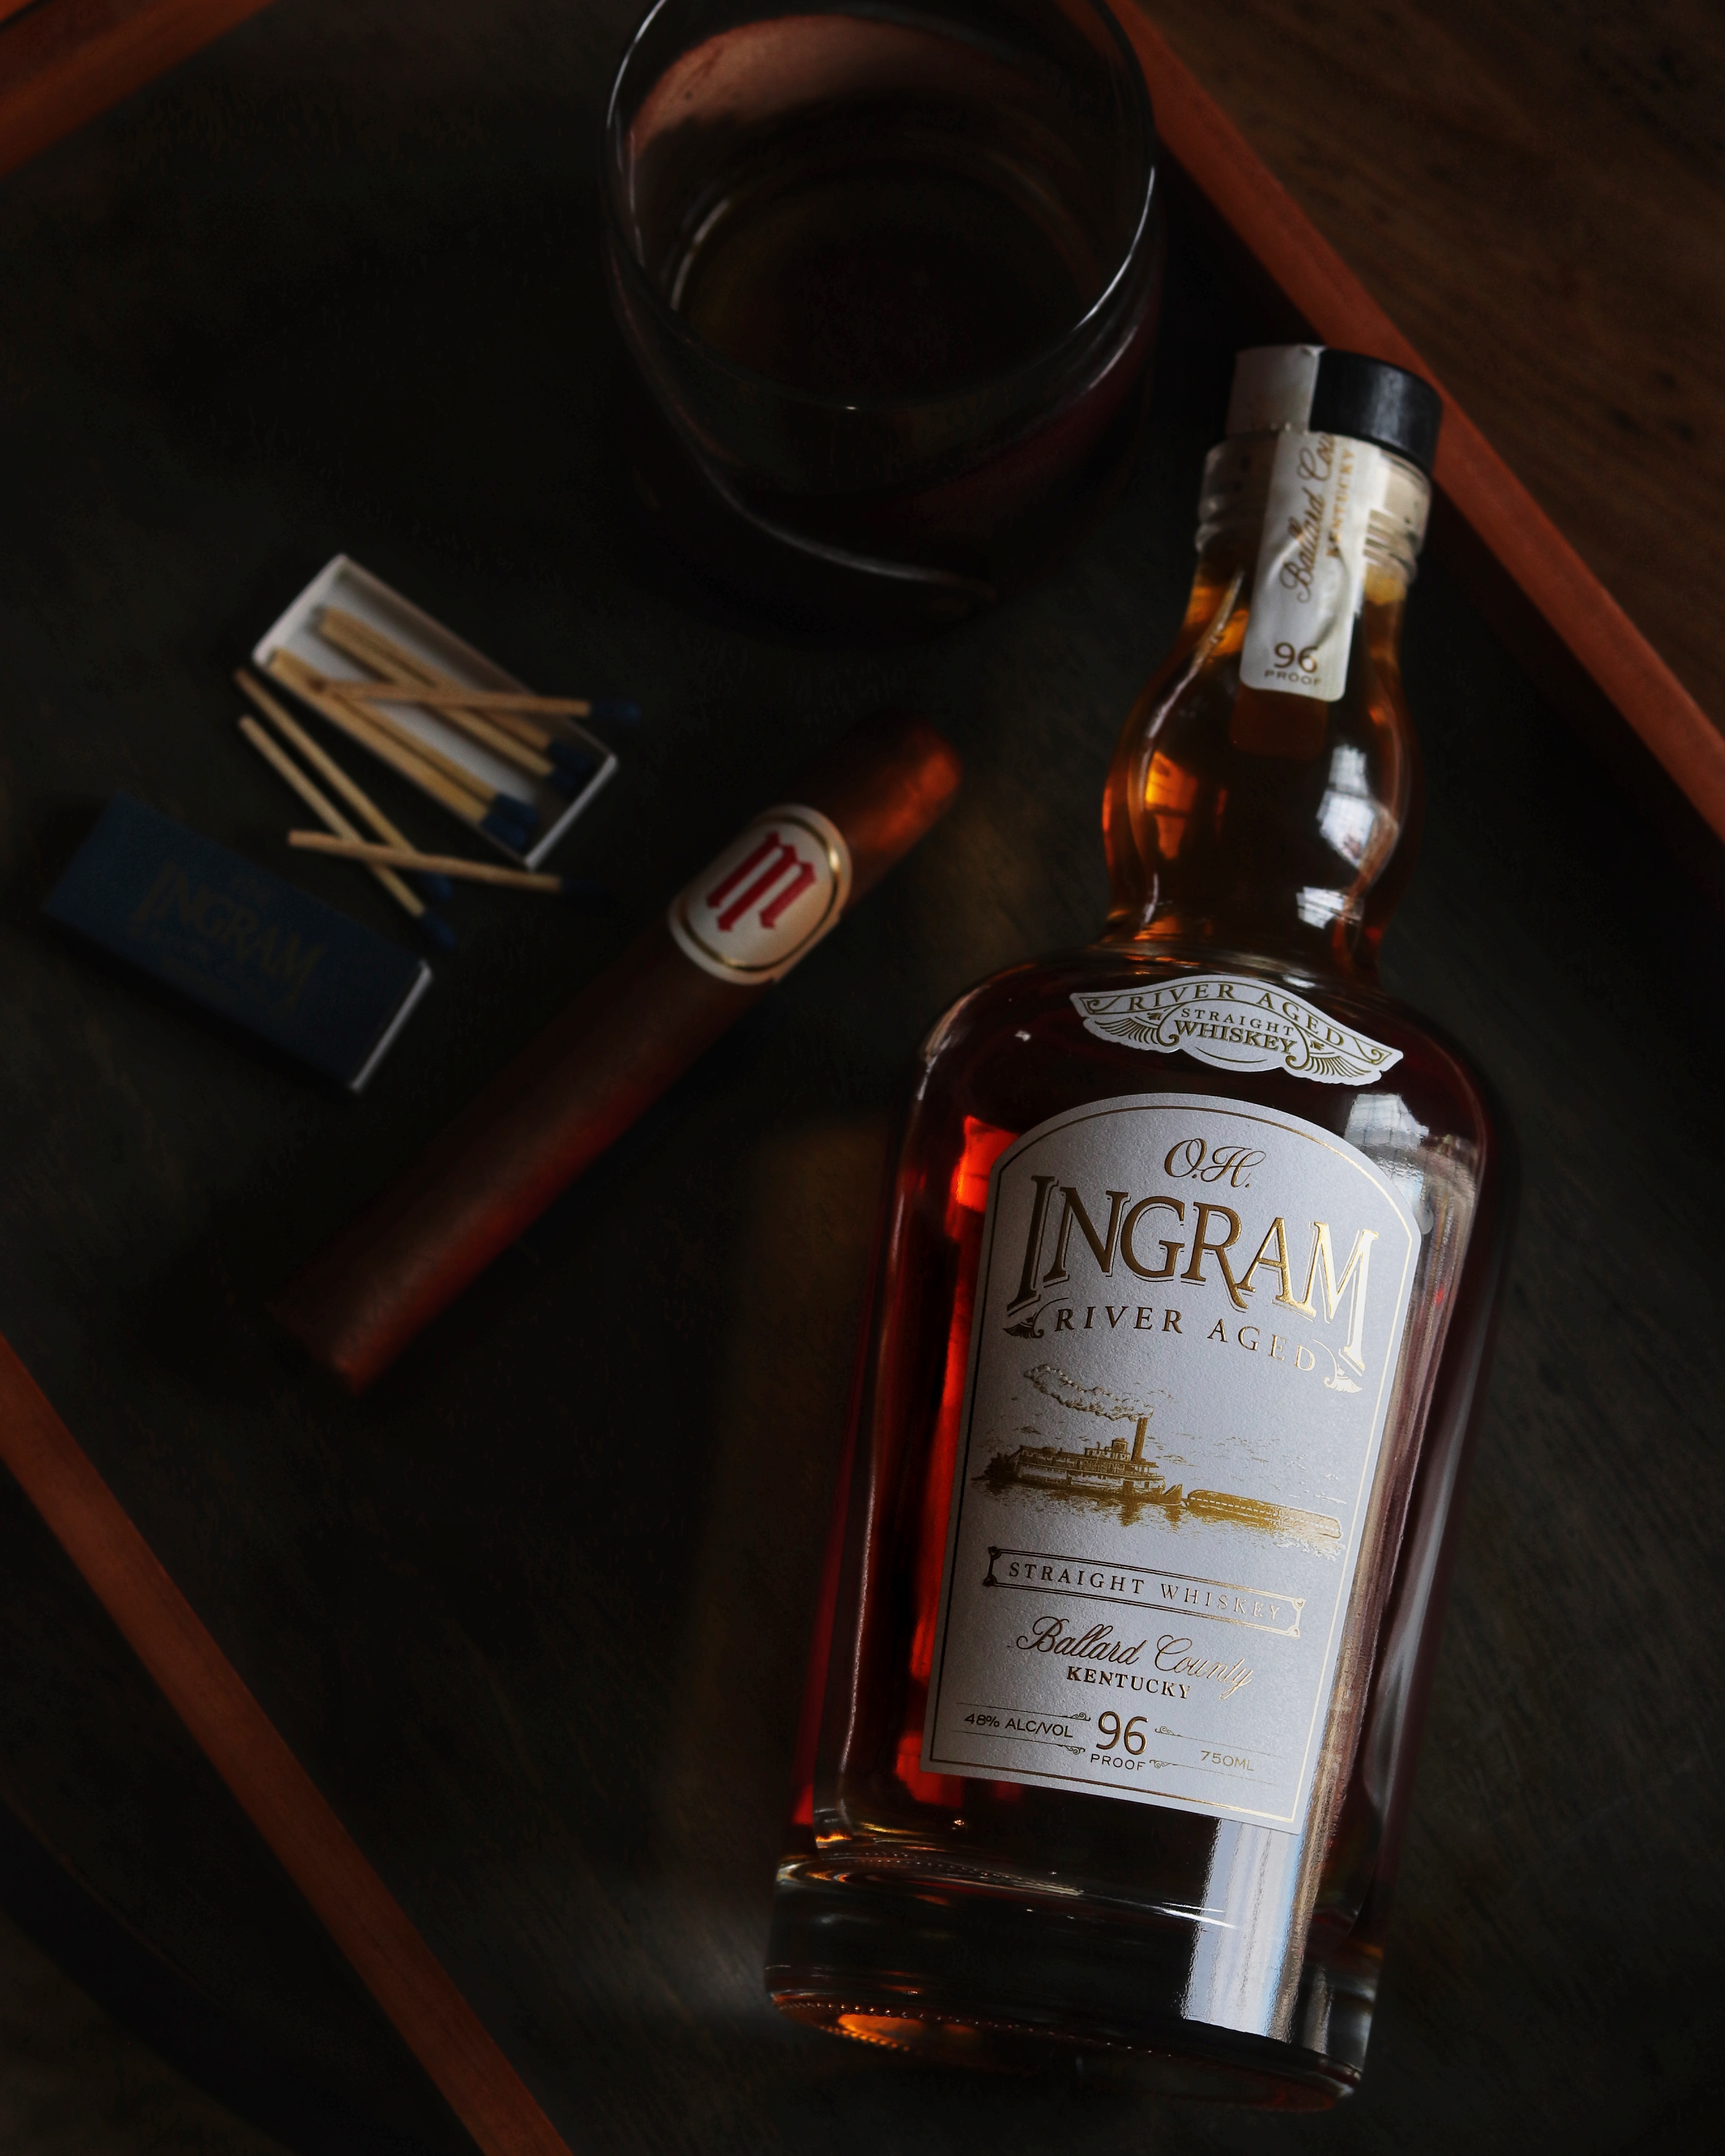 103: Whiskey Aged on the Mississippi River – O.H. Ingram